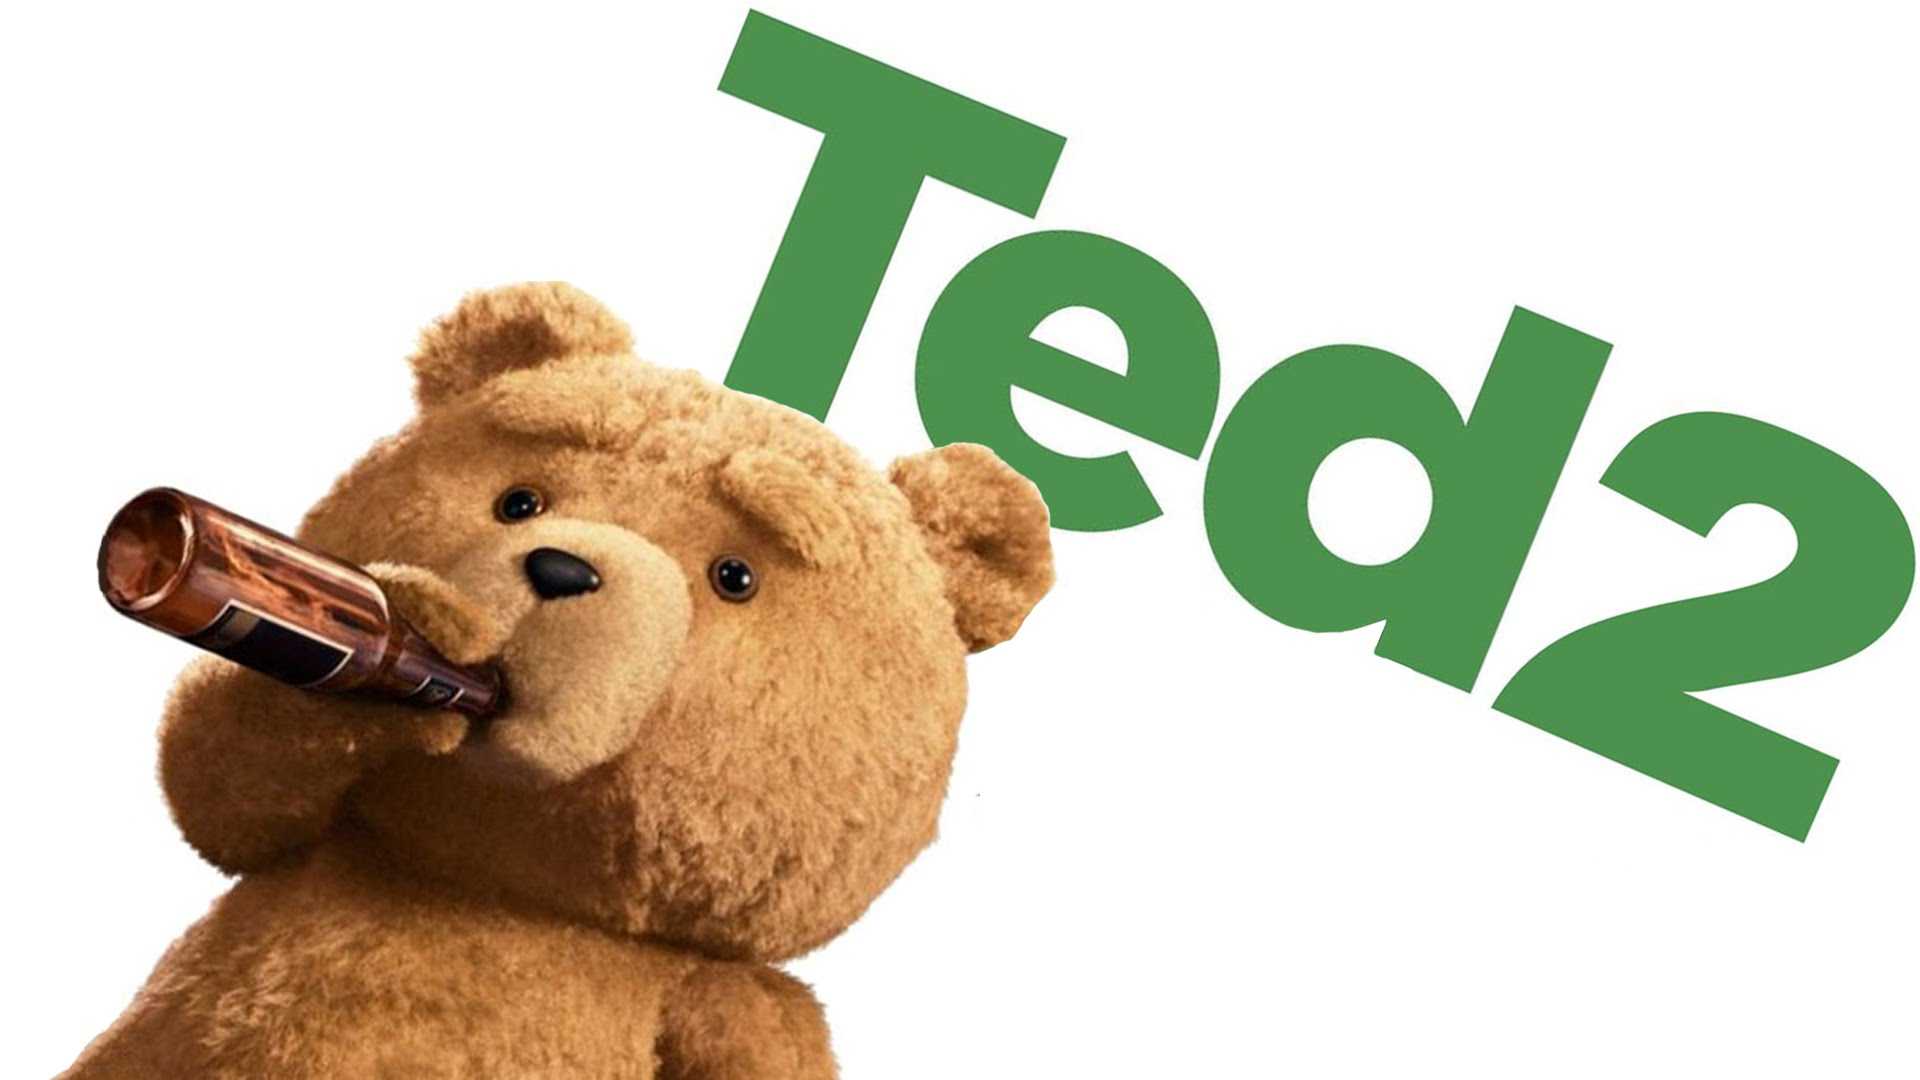 "Ted 2" sta per arrivare al cinema, ecco il trailer del film